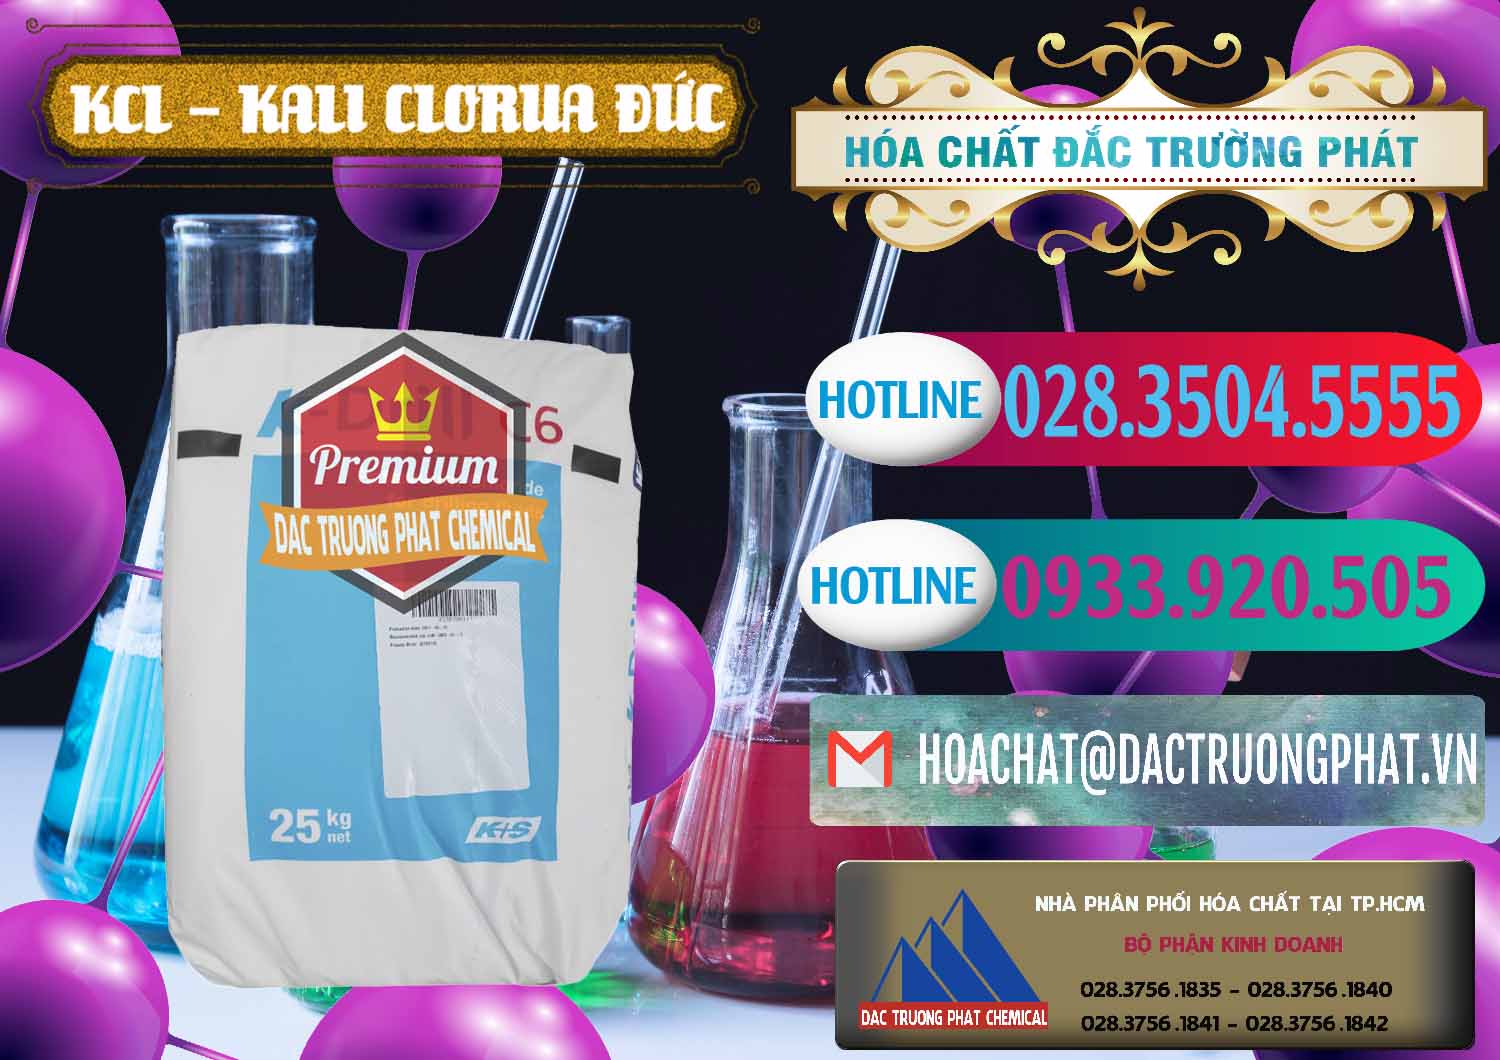 Cty chuyên cung cấp và bán KCL – Kali Clorua Trắng K DRILL Đức Germany - 0428 - Nơi bán và cung cấp hóa chất tại TP.HCM - truongphat.vn